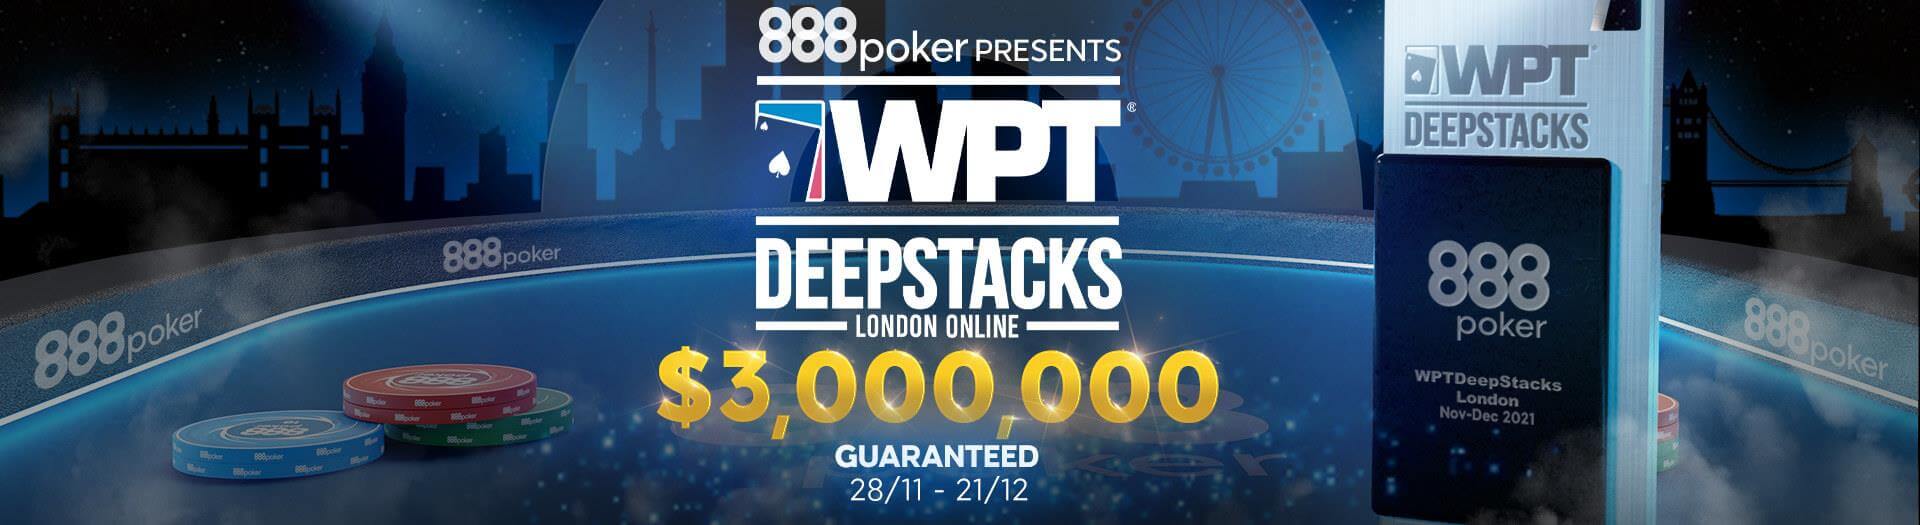 $3,000,000 Guaranteed at the WPT DeepStacks London Online at 888poker